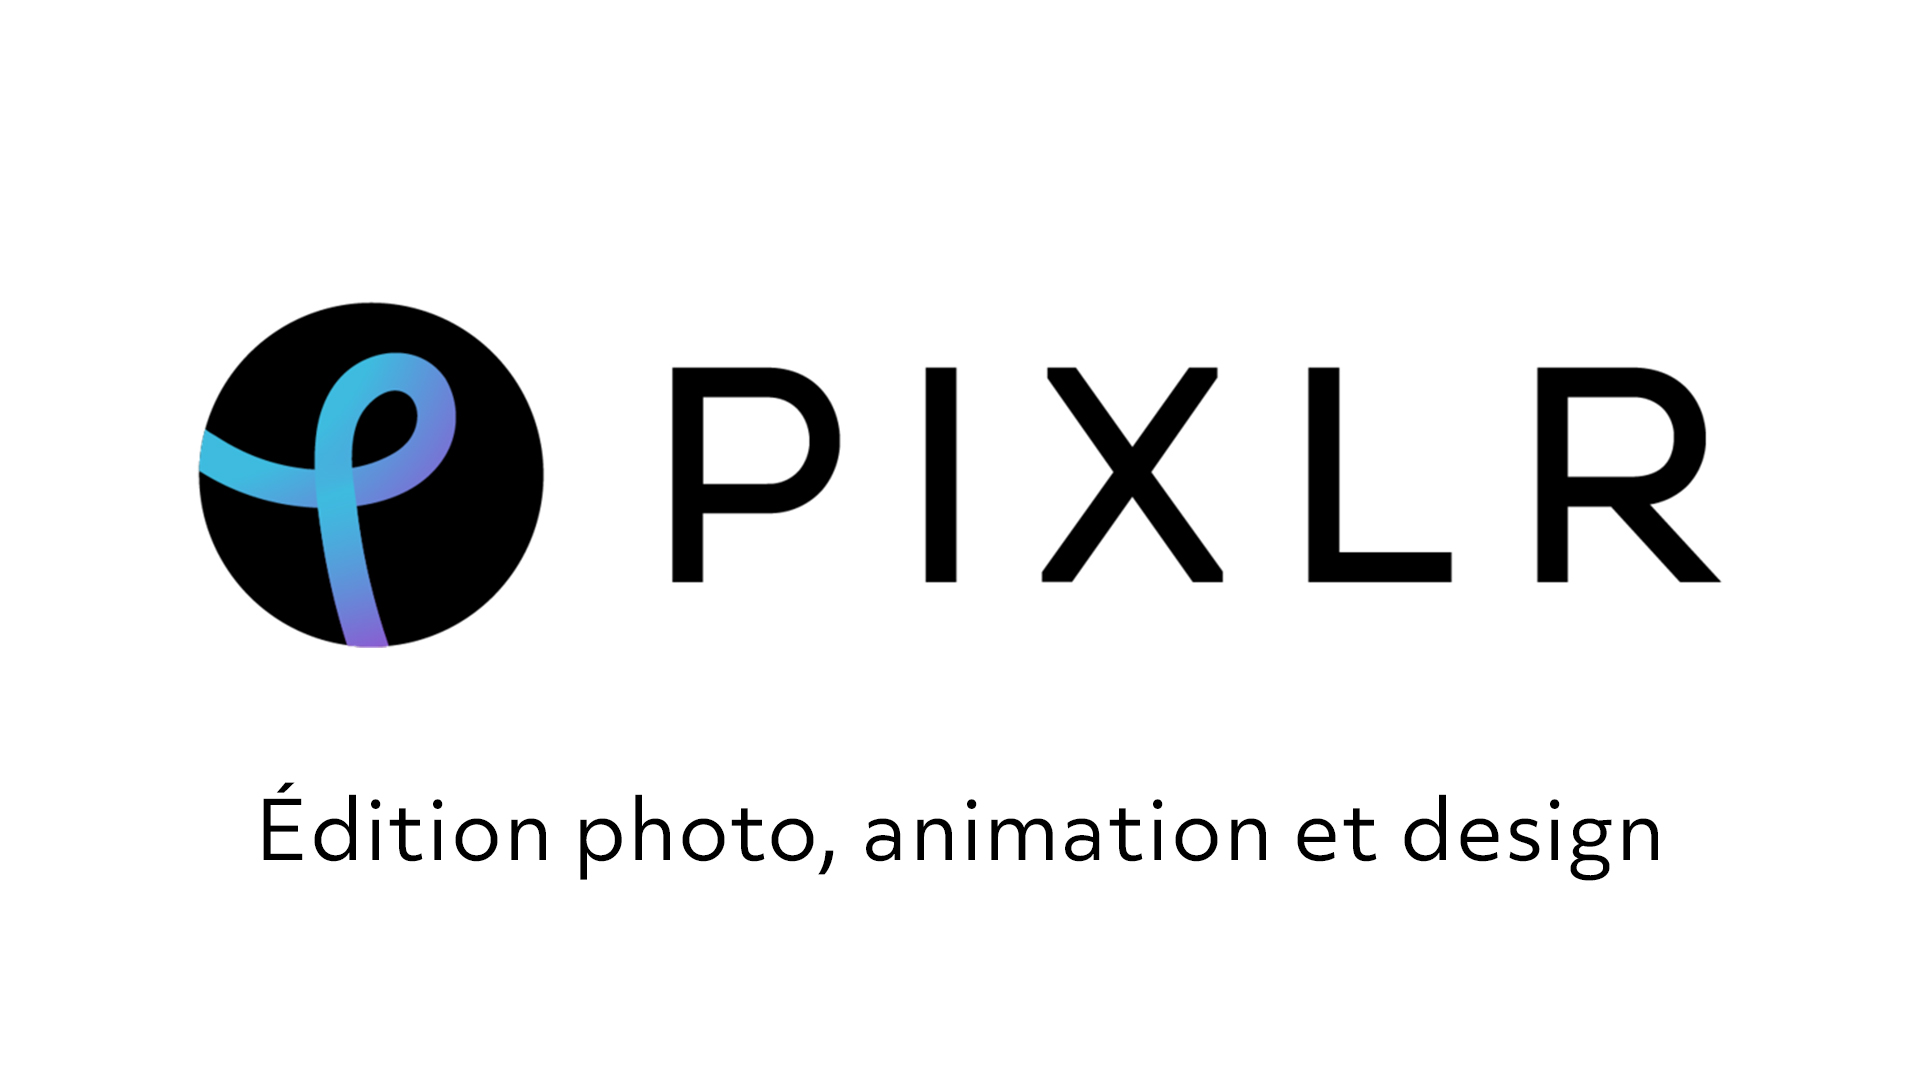 Pixlr édition photo animation et design